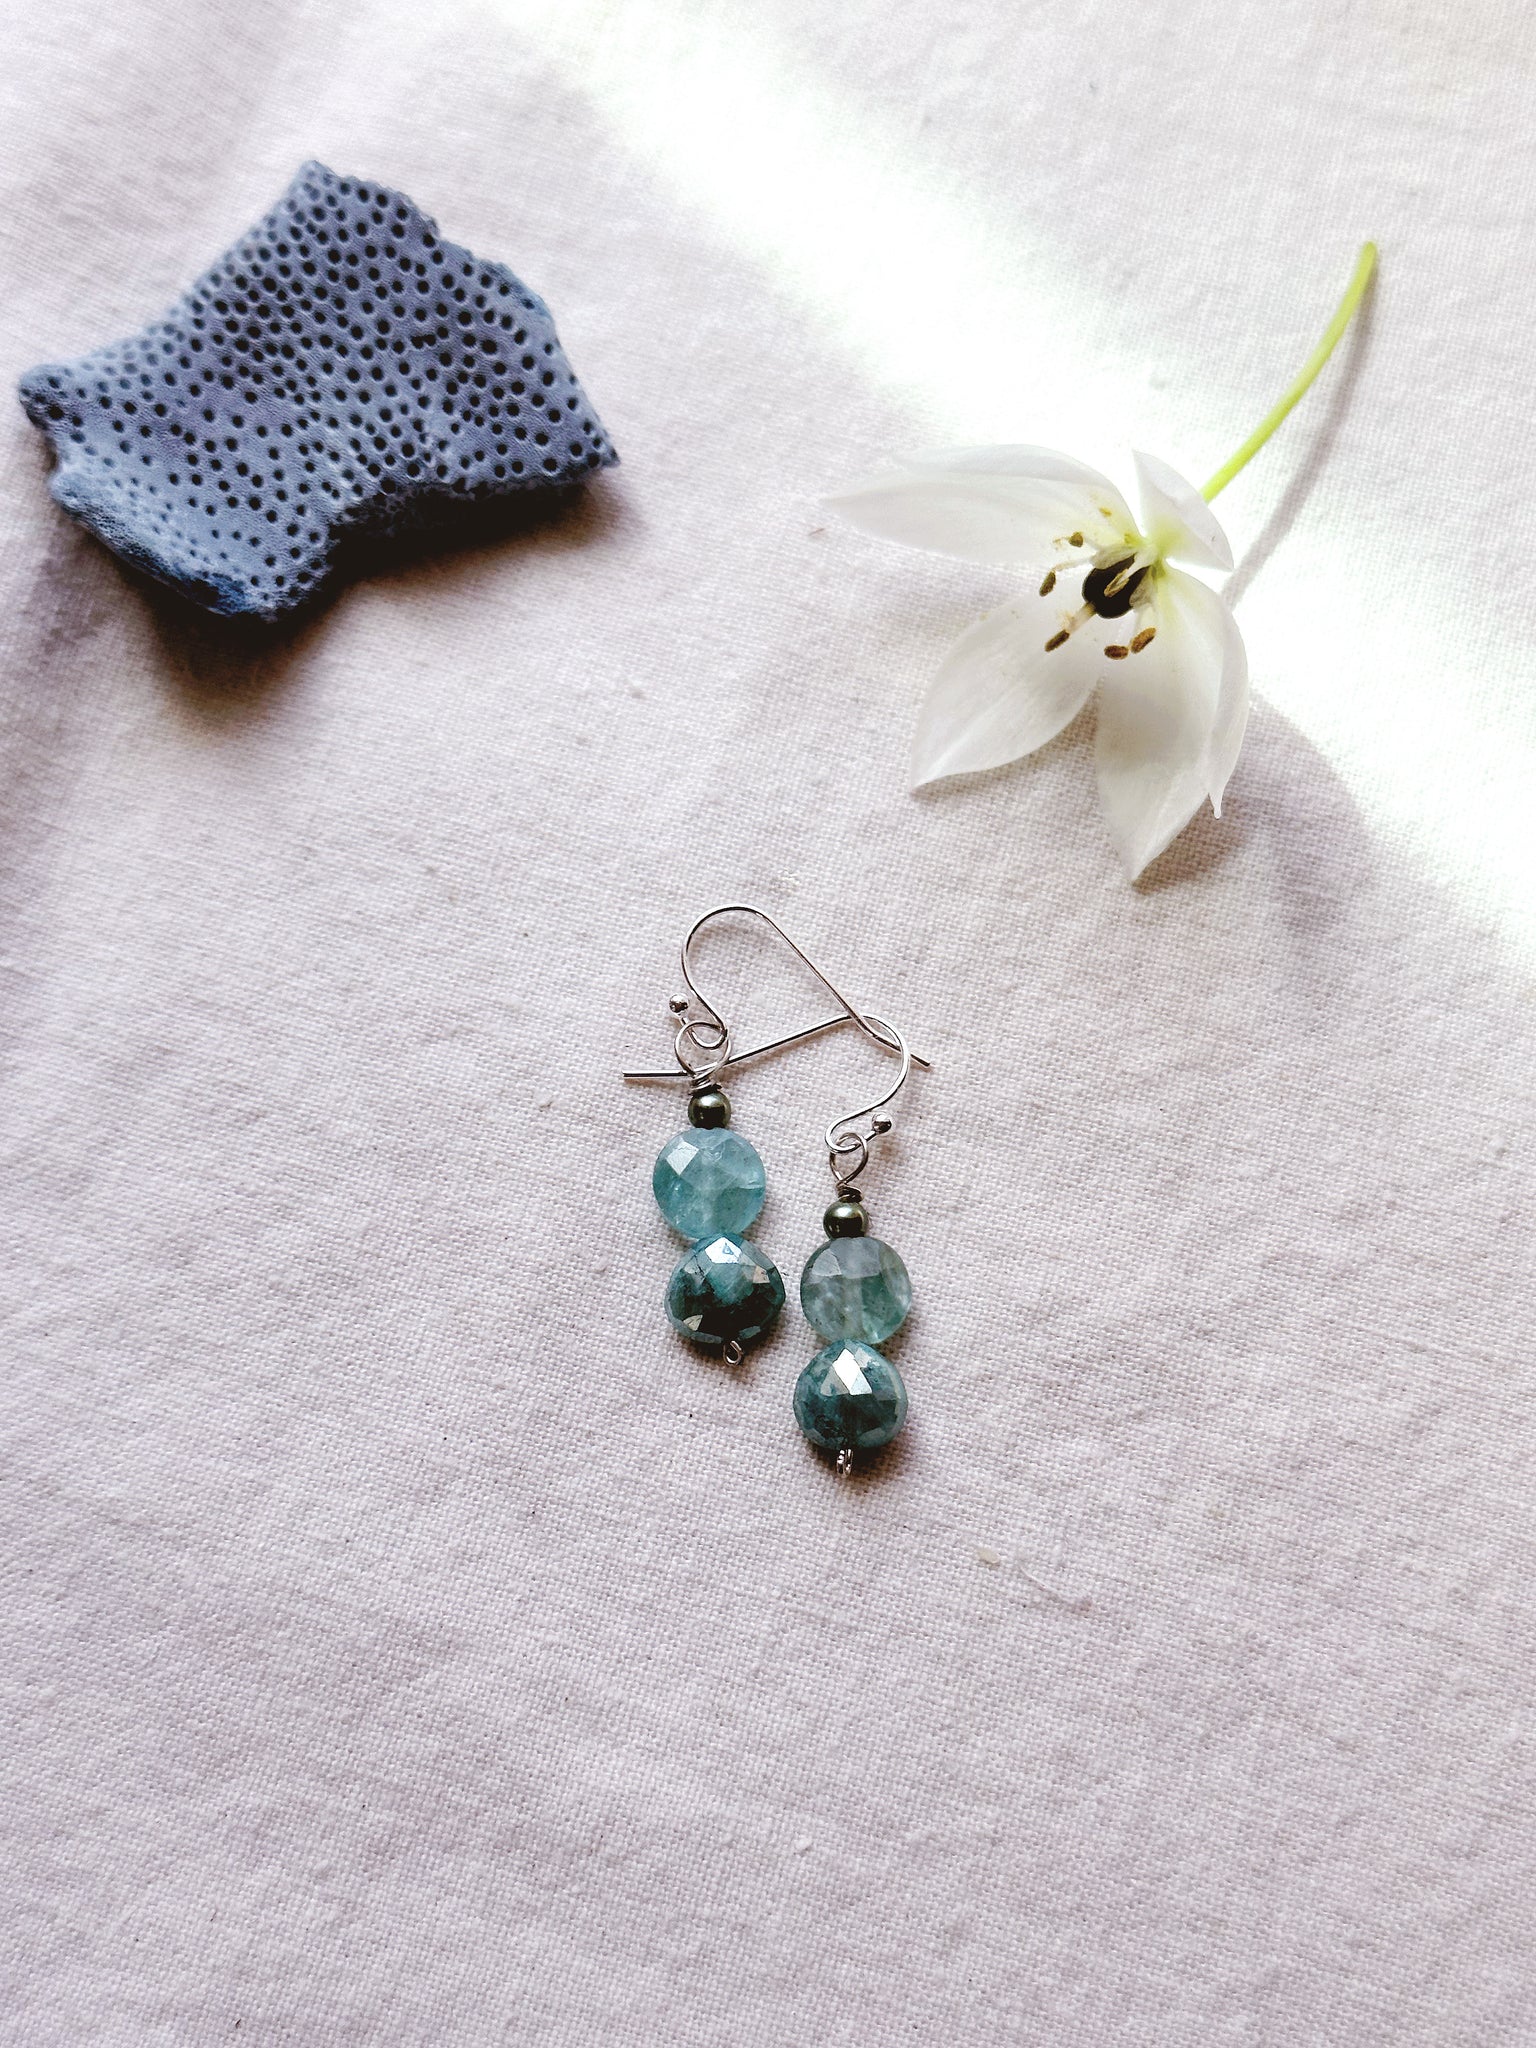 Nereid + Apatite + Green Moonstone + Freshwater Pearl earrings